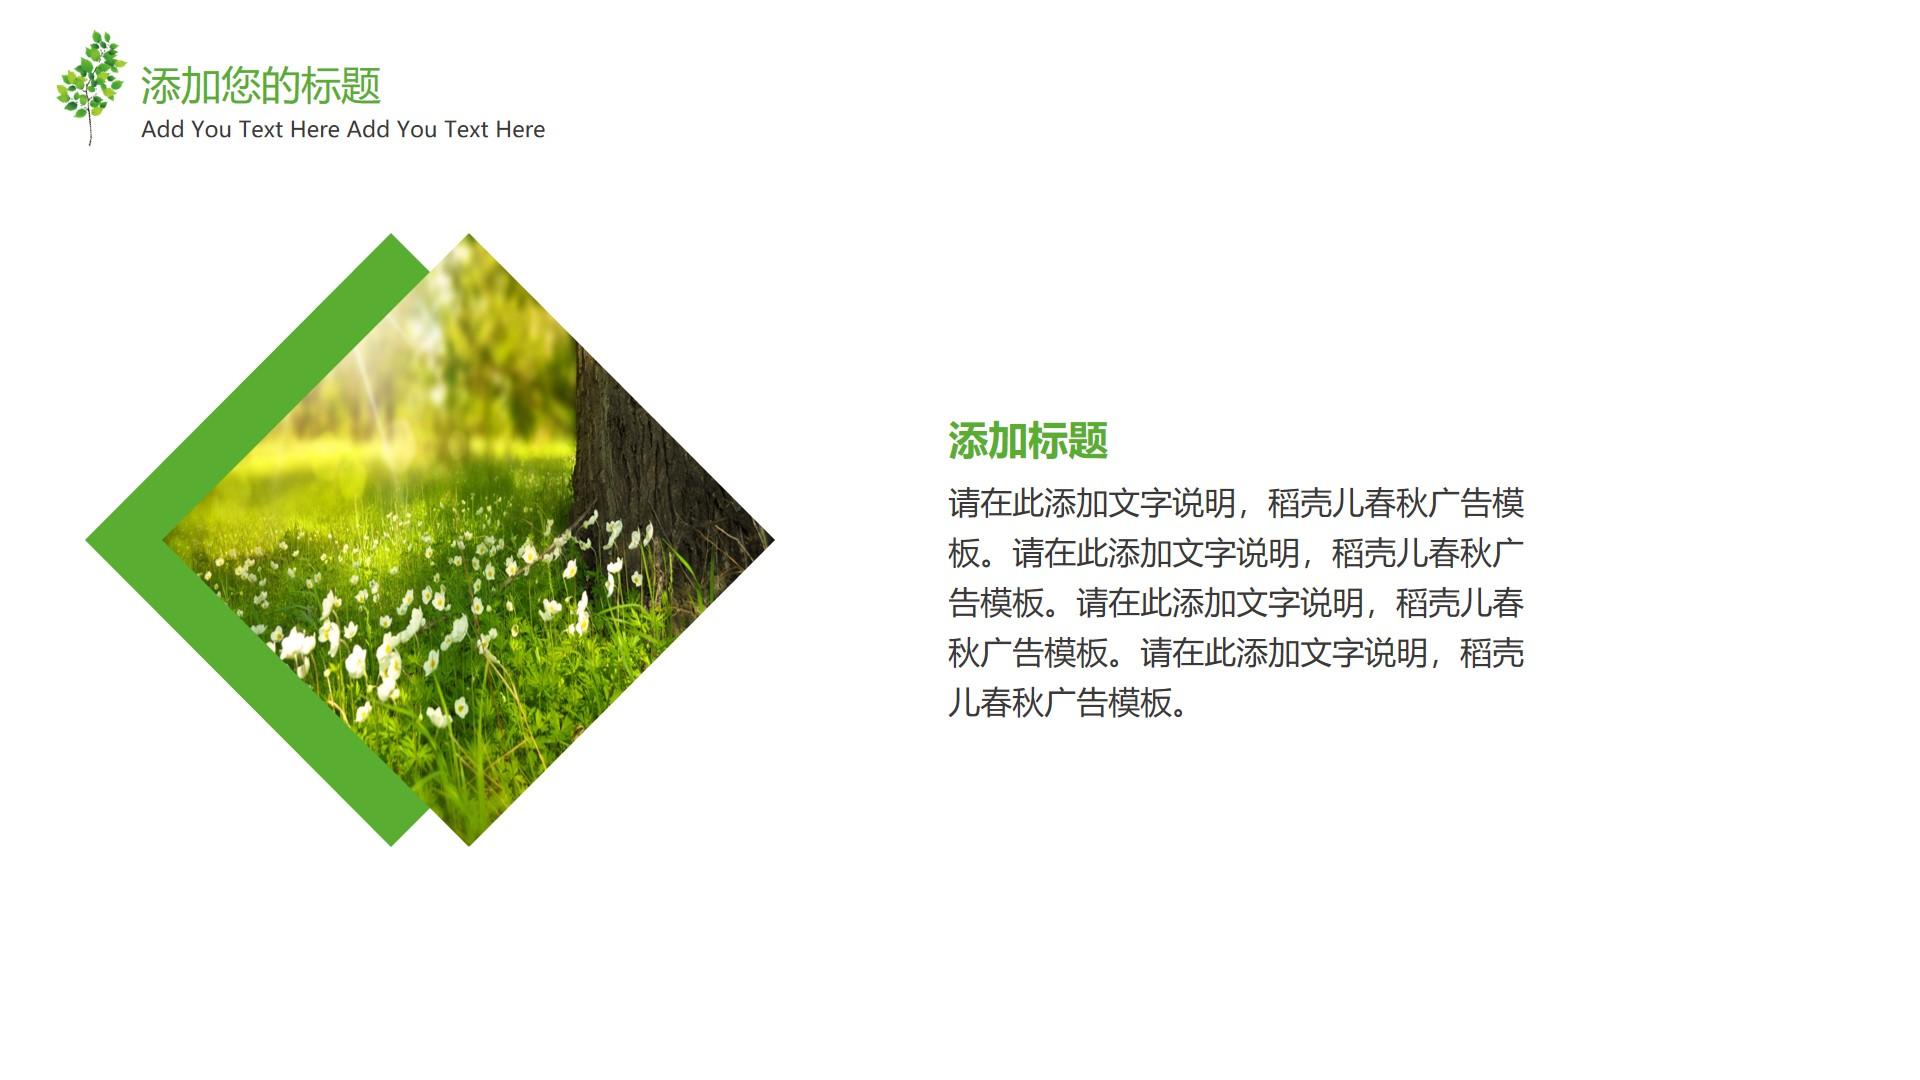 教育教学绿色白色简洁素雅text 稻壳 春秋 广告 add云素材PPT模板1672673877804